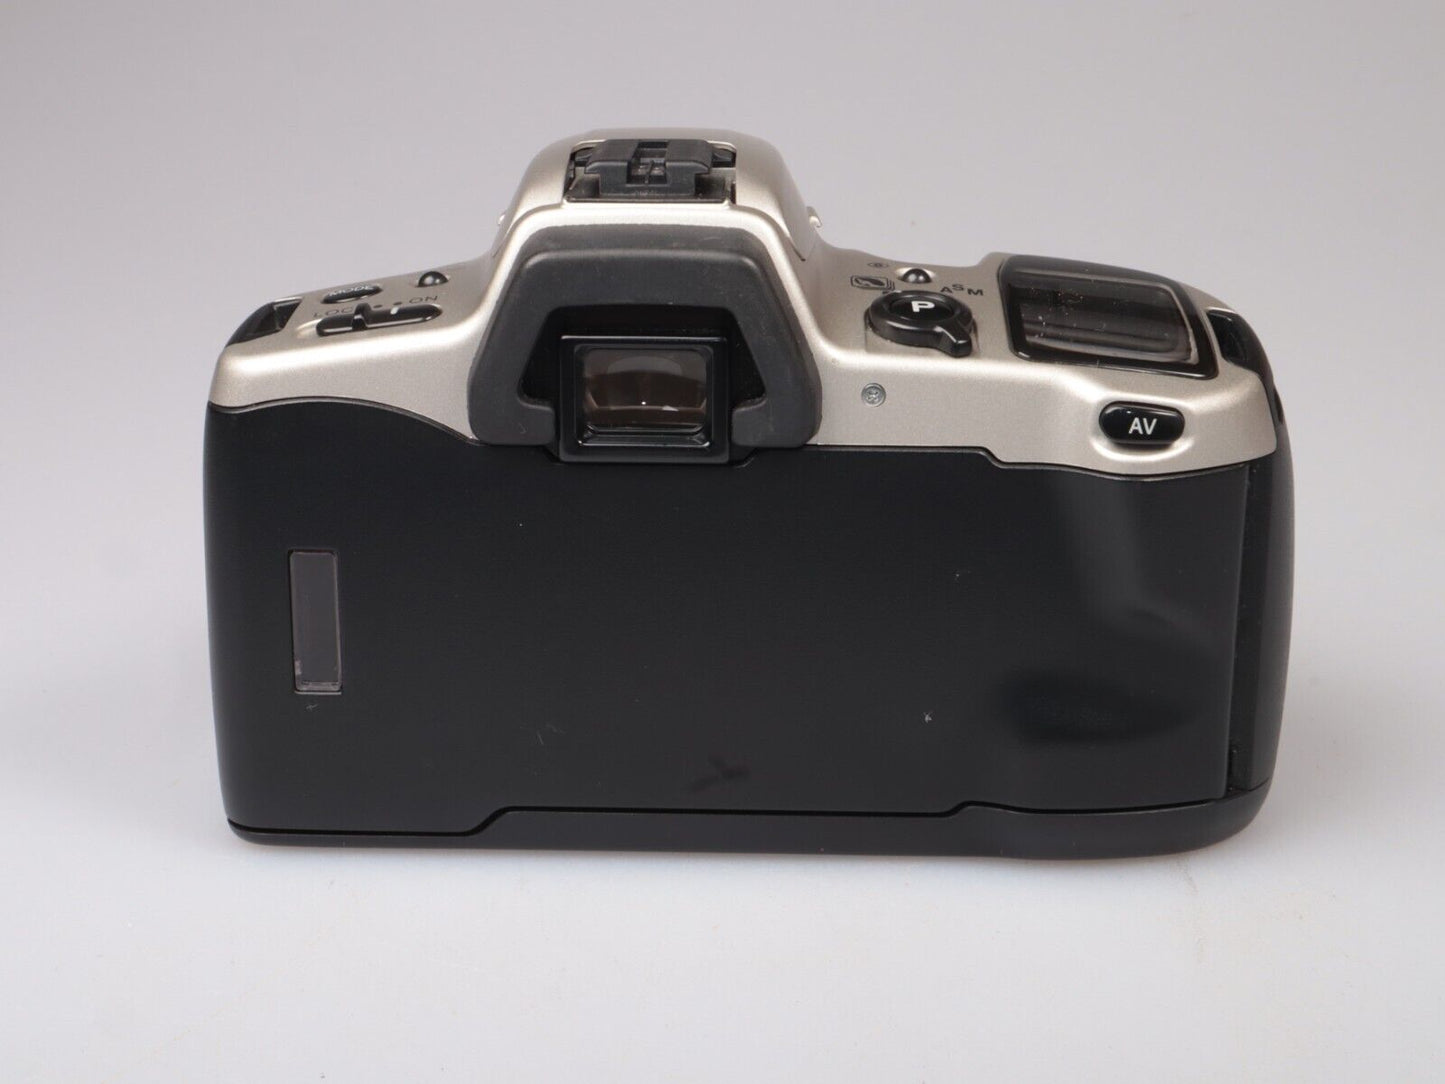 Minolta Dynax 500si | 35 mm spiegelreflexfilmcamera | Alleen lichaam | Zilver #2653 